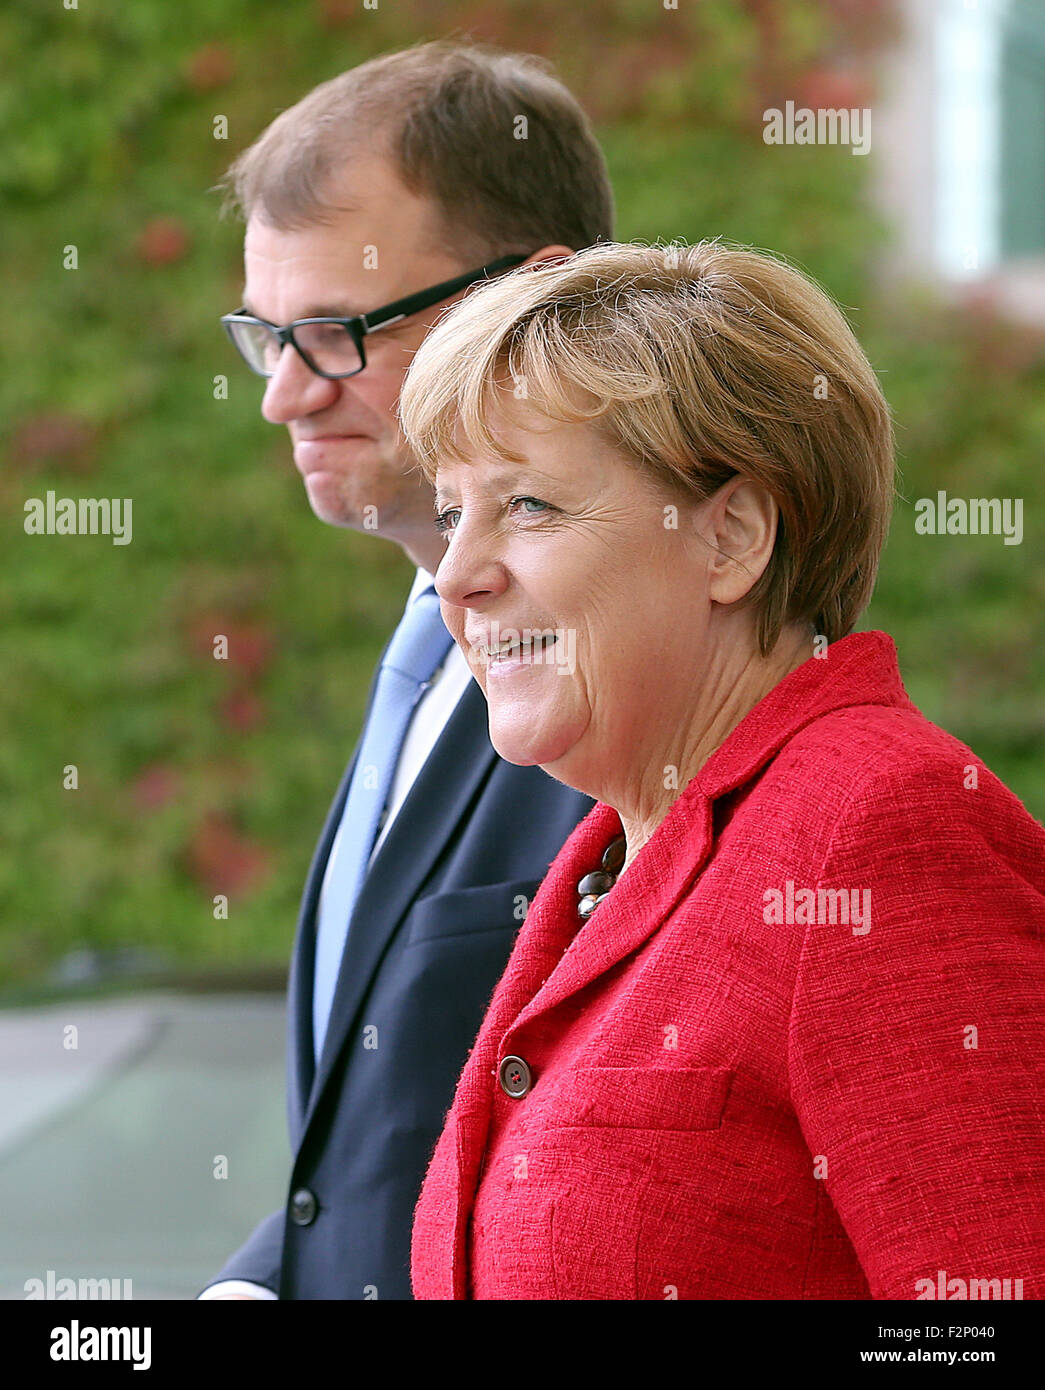 Berlin, Allemagne. 22 Sep, 2015. La chancelière allemande Angela Merkel (R) reçoit le Premier Ministre Finlandais Juha Sipila avec un salut militaire à la Chancellerie fédérale à Berlin, Allemagne, 22 septembre 2015. Photo : WOLFGANG KUMM/dpa/Alamy Live News Banque D'Images